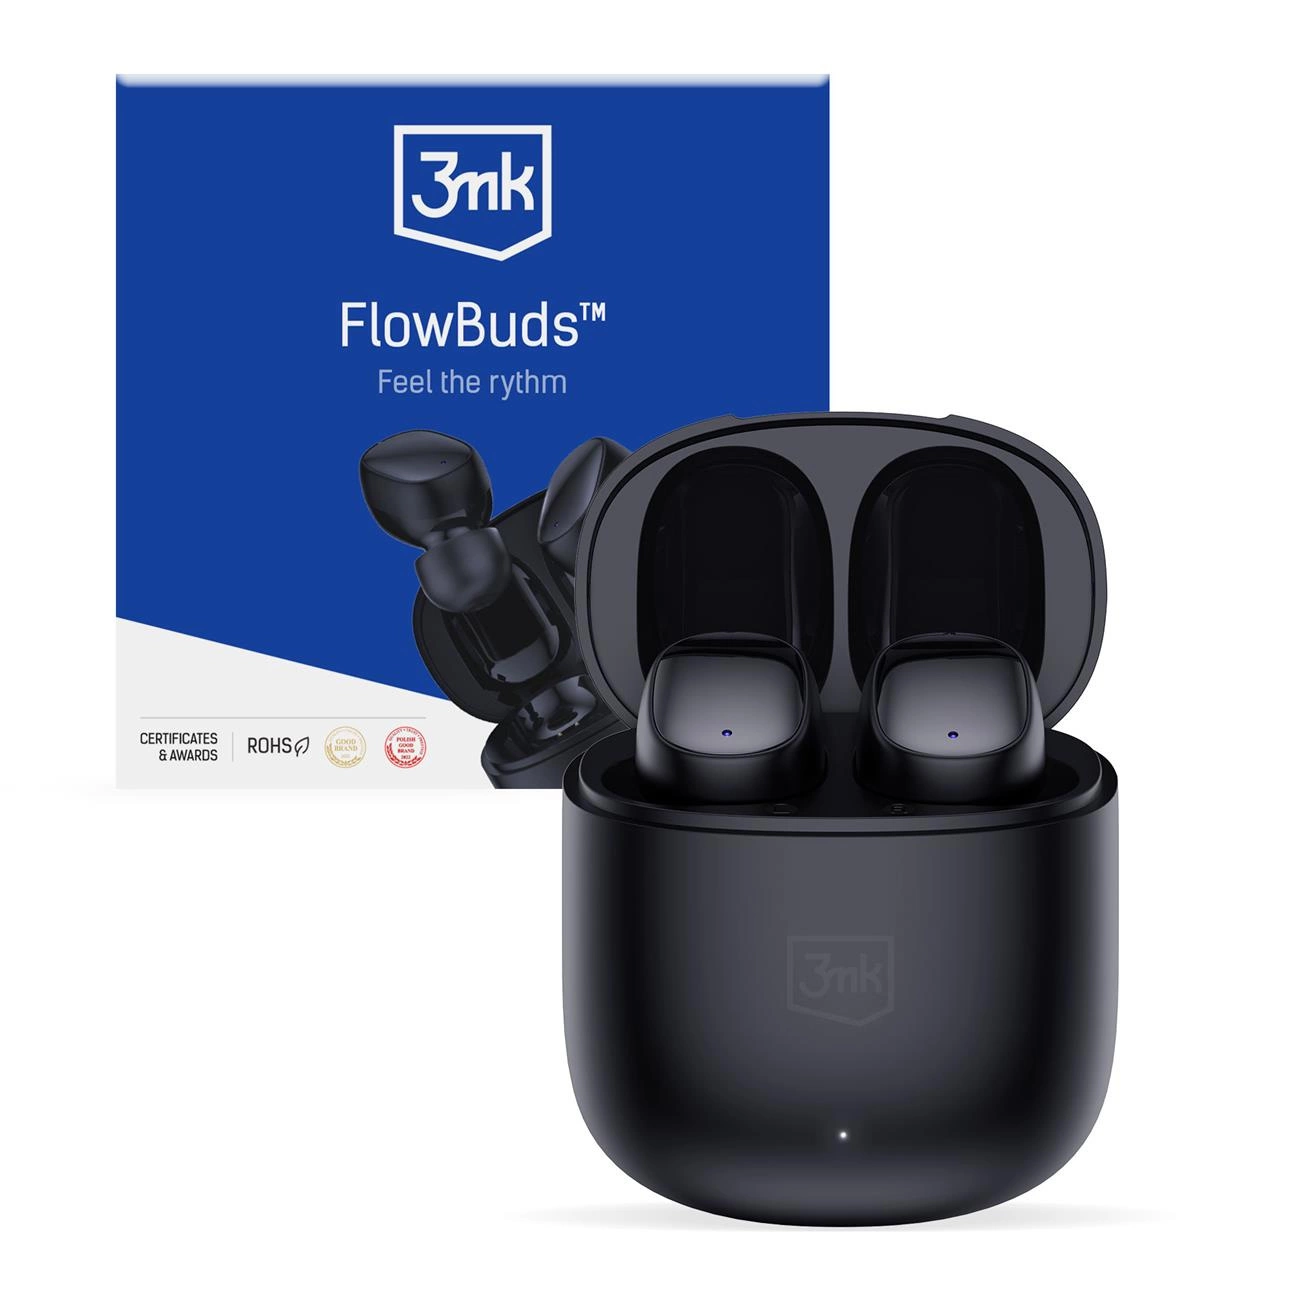 3mk Protection 3mk FlowBuds Bluetooth bezdrátová sluchátka do uší - černá